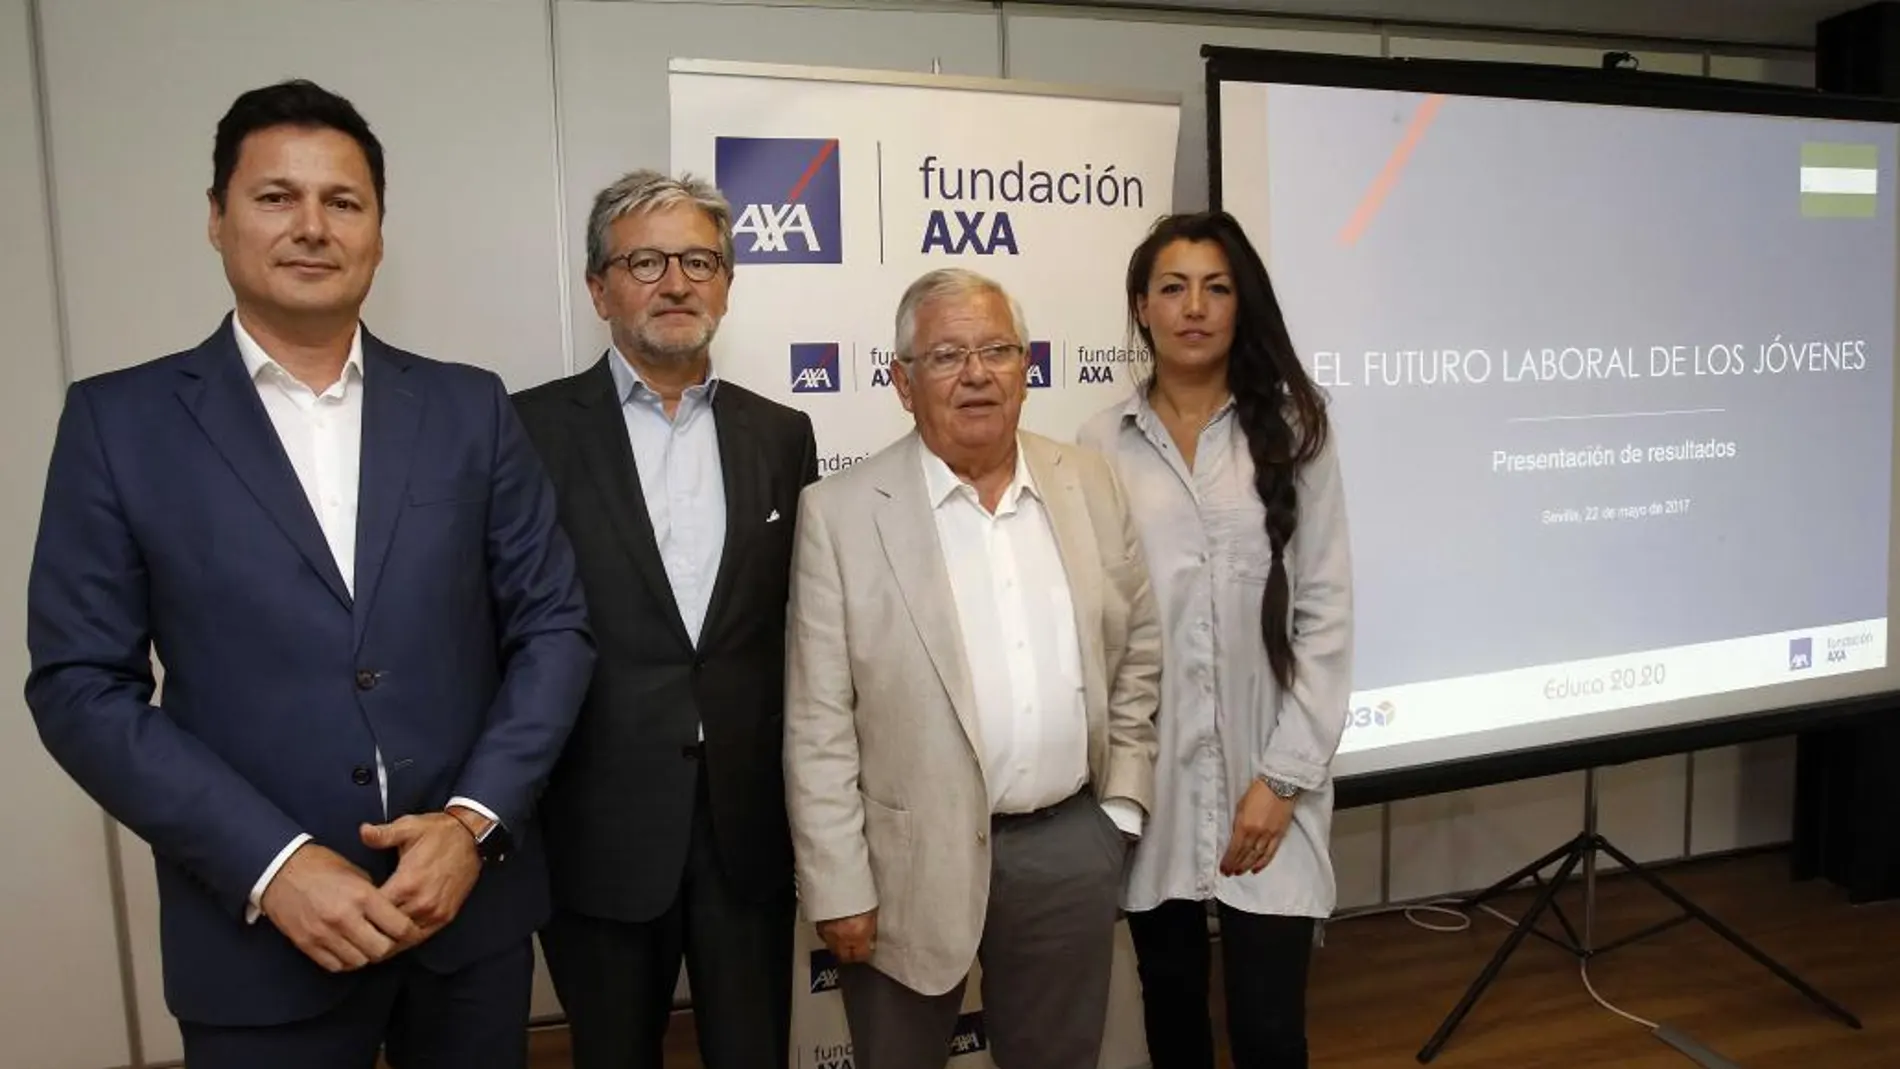 Josep Alfonso, director de la Fundación AXA; Juan Manuel Castro, vicepresidente de la fundación; Fernando Jáuregui, presidente del foro Educa 2020; y Lourdes Carmona, directora del foro